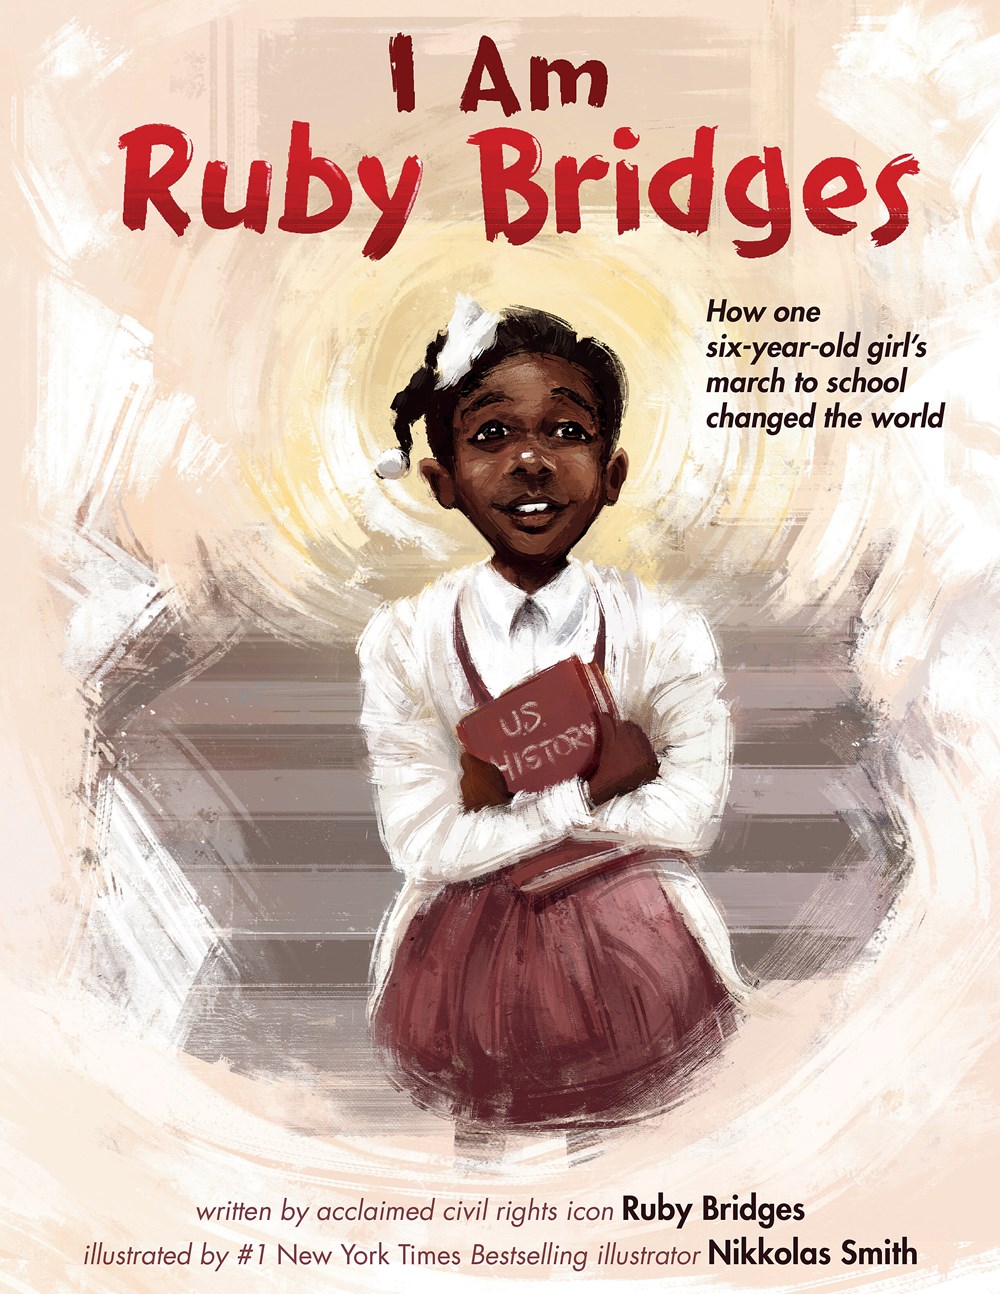 I am Ruby Bridges by Ruby Bridges